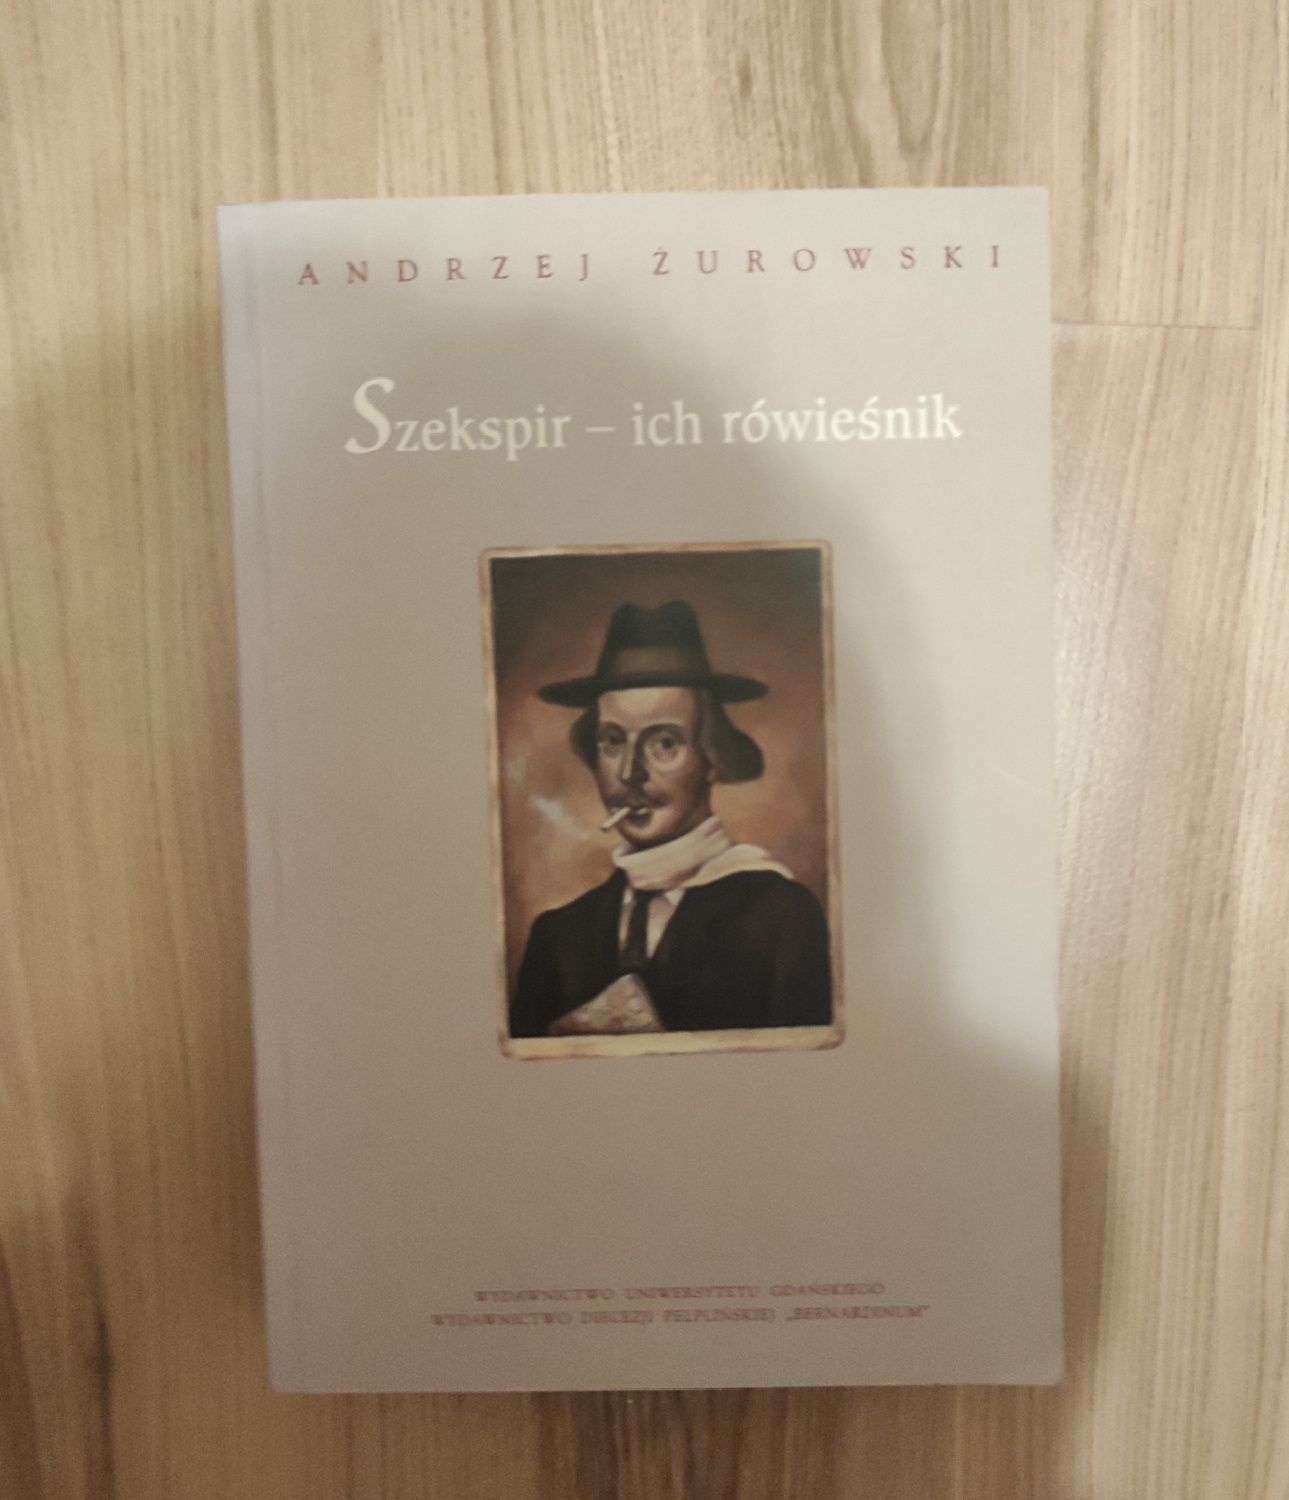 Książka Szekspir - ich rówieśnik - Andrzej Żurowski
Stan bardzo dobry,